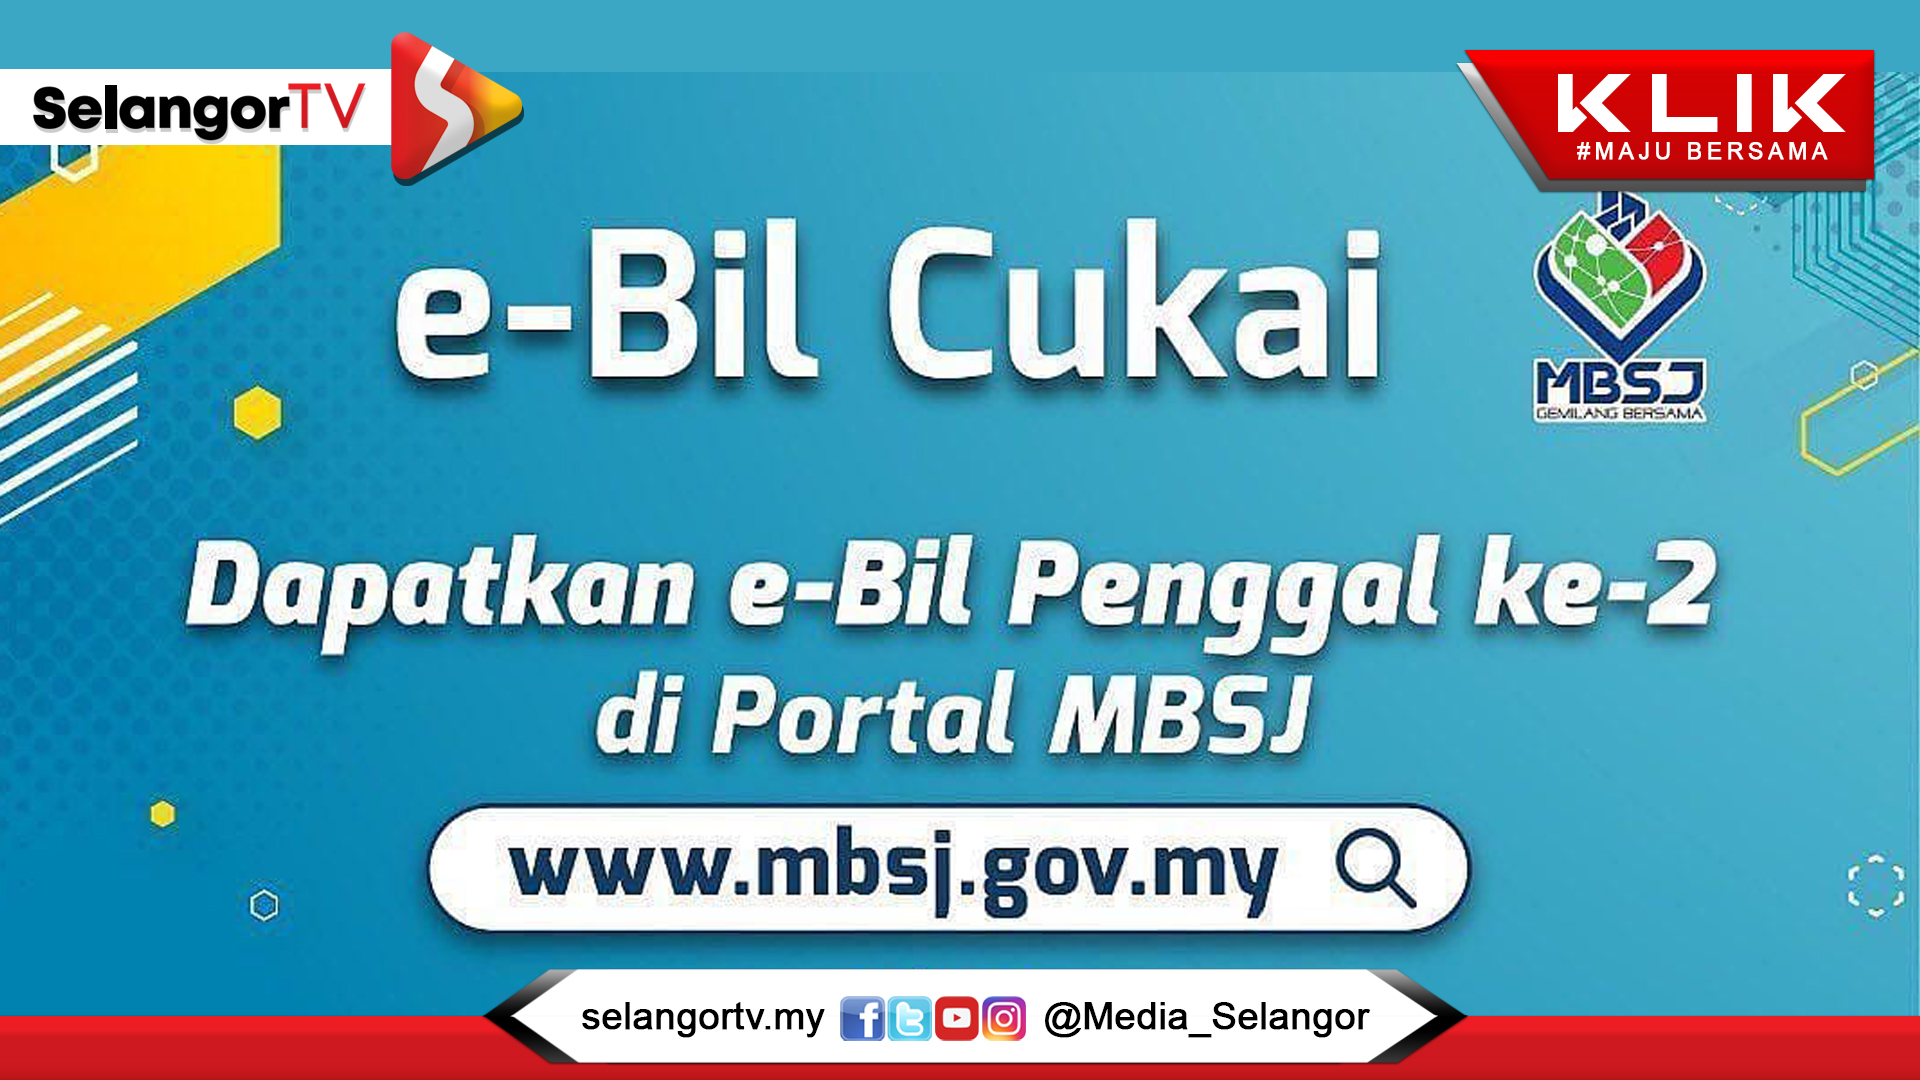 MBSJ seru penduduk bayar cukai taksiran sebelum 31 Ogos - SelangorTV